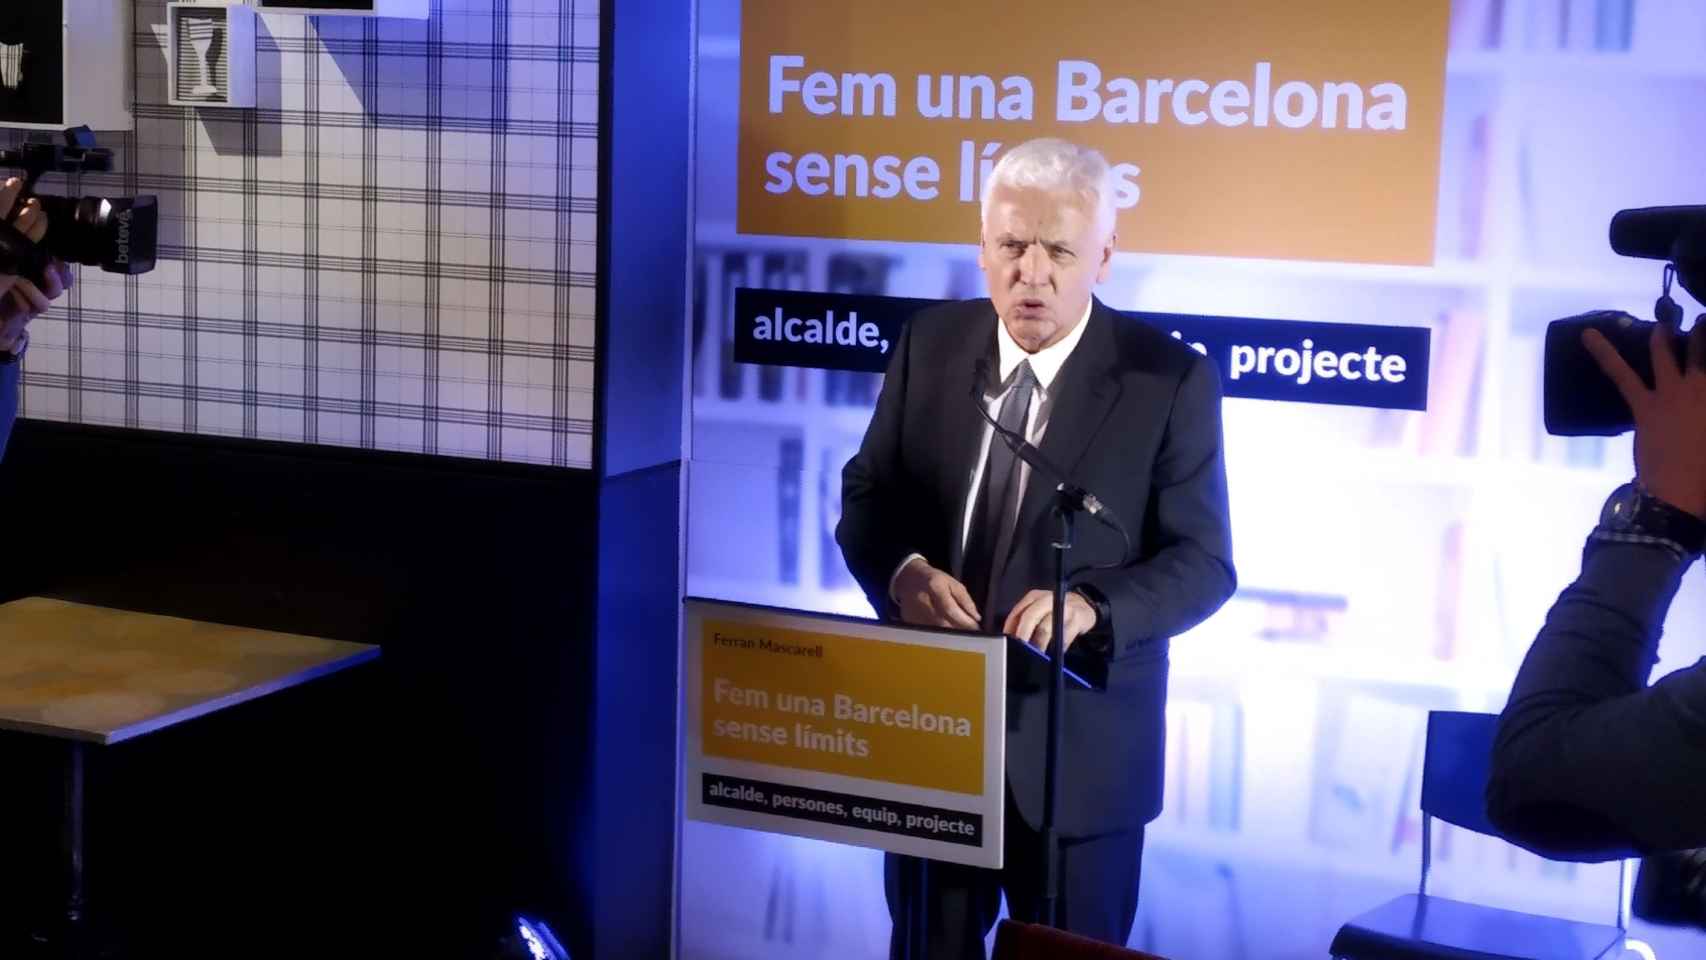 Ferran Mascarell ha anunciado su candidatura independiente y soberanista a la alcaldía de BCN / JORDI SUBIRANA